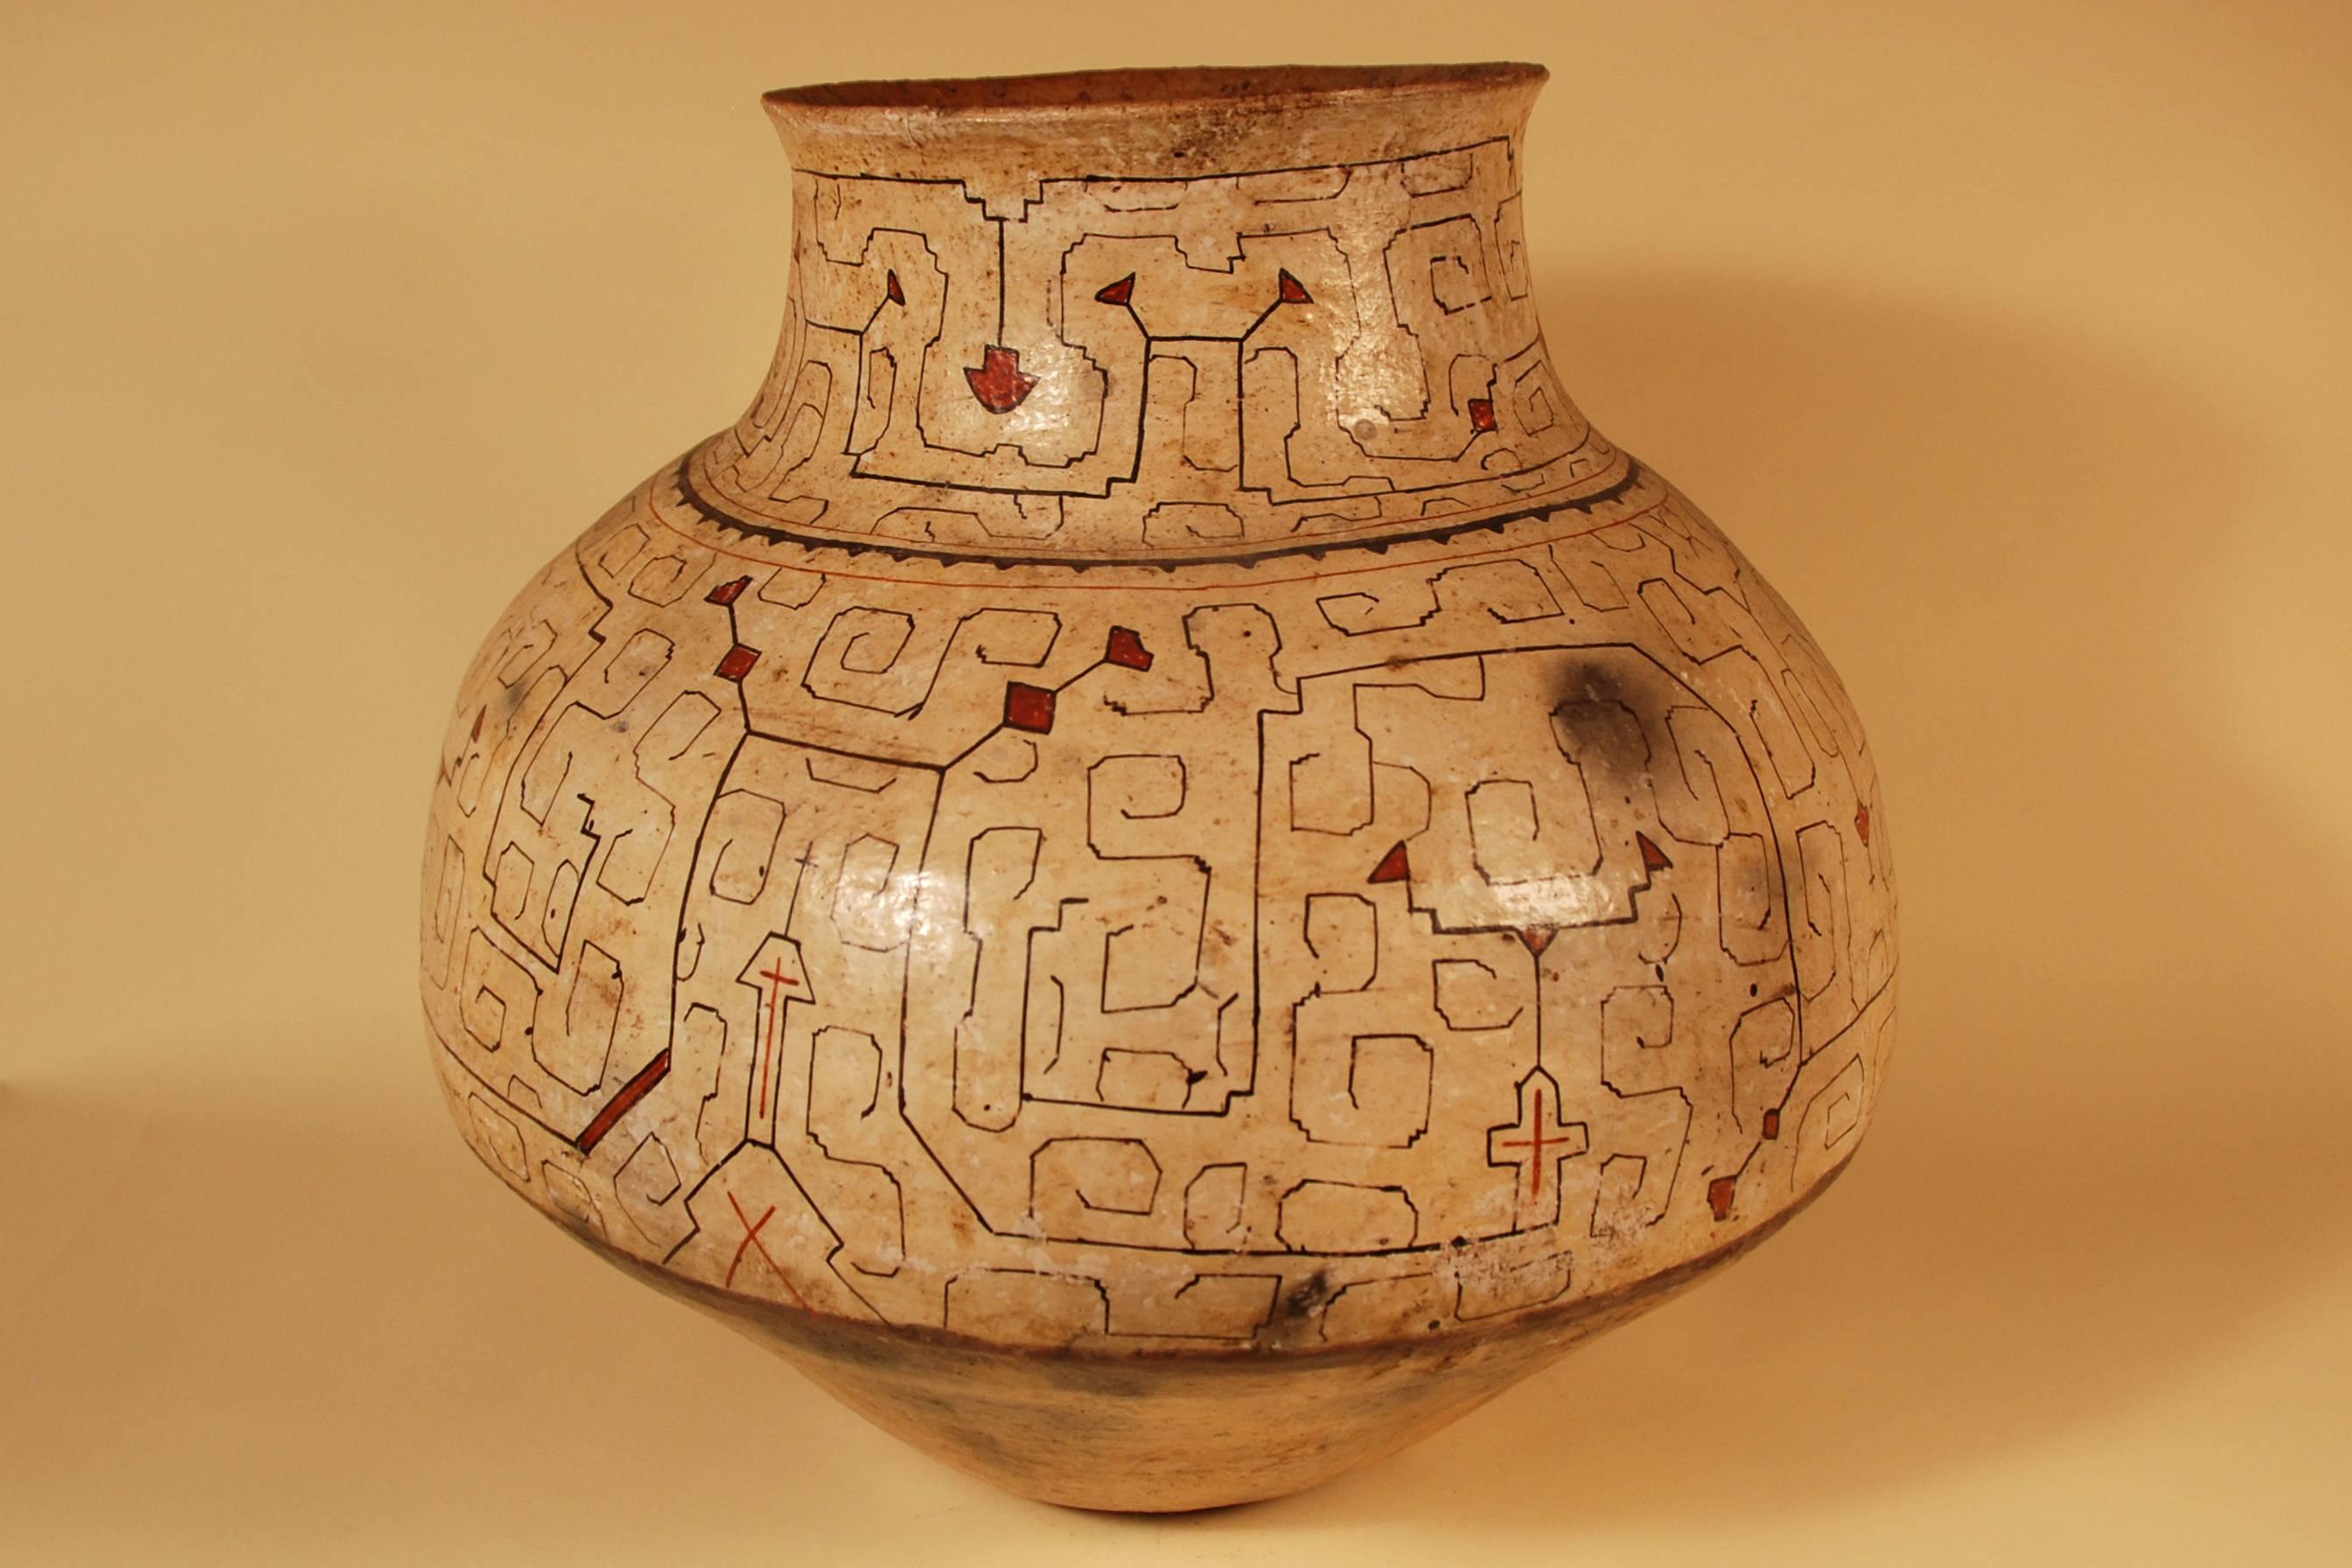 Primitive Mid-20th Century Large Tribal Ceramic Pot, Shipibo Culture Peruvian Amazon